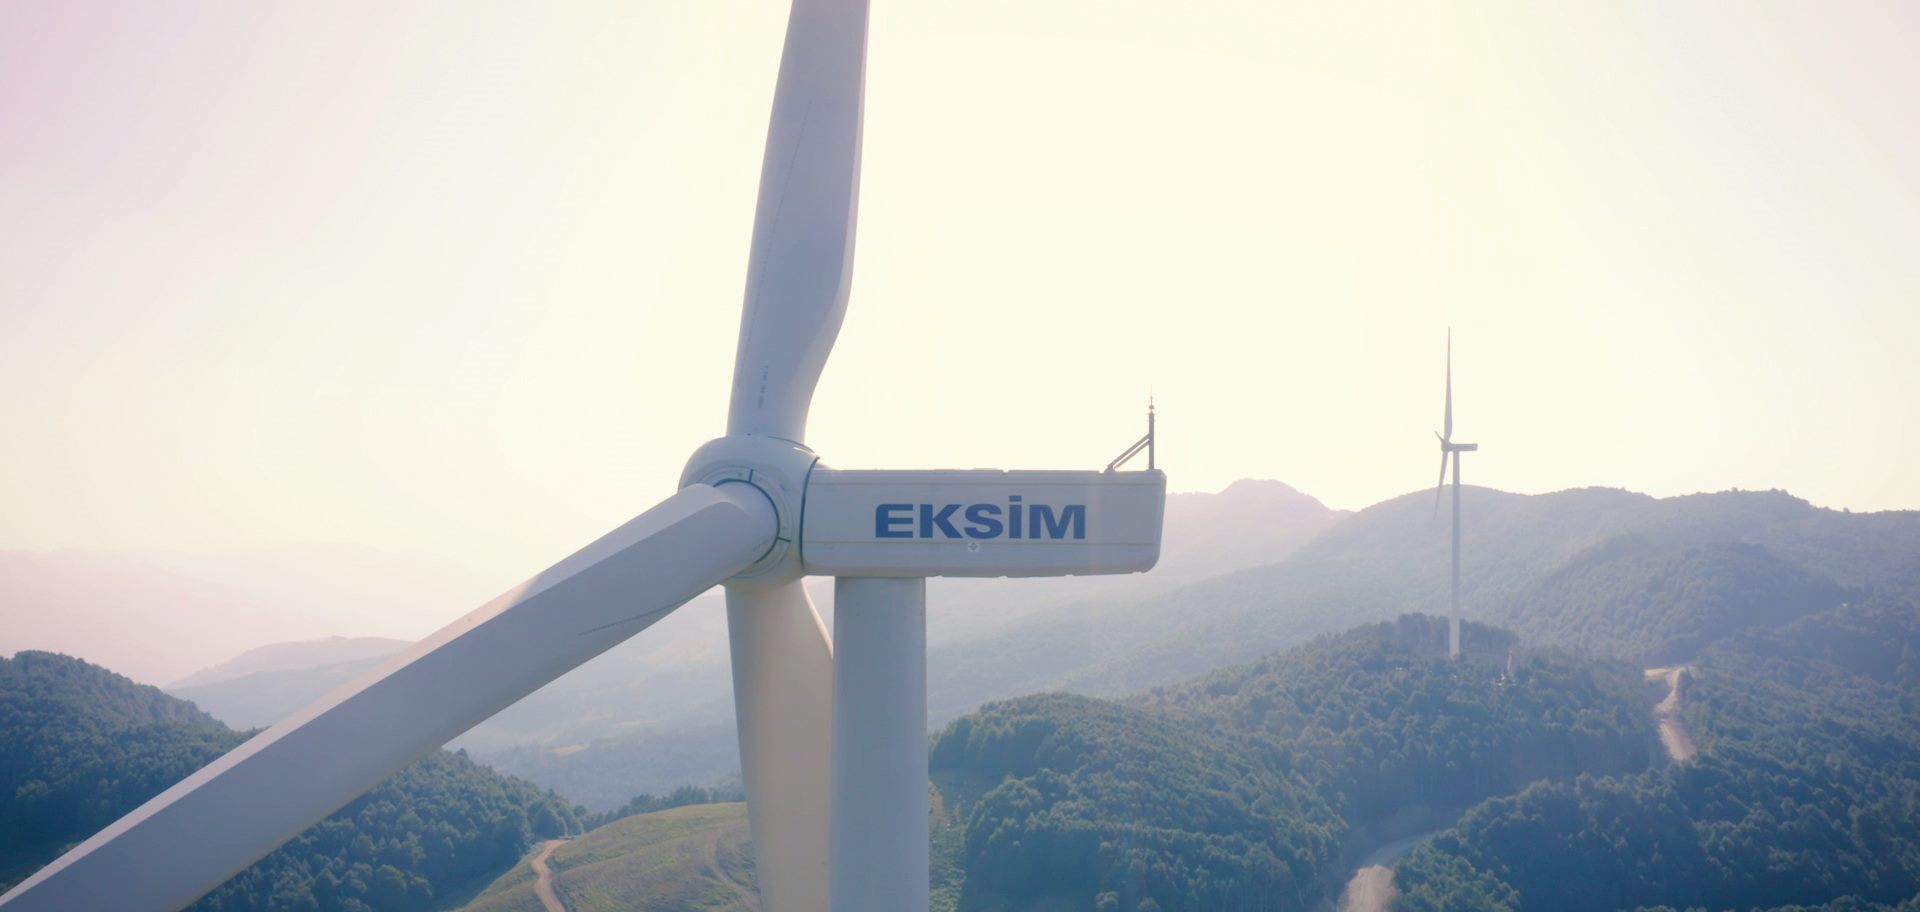 Eksim Holding, yeşil dönüşüme, yeşil işler ve yeşil yakalarla hazırlanıyor